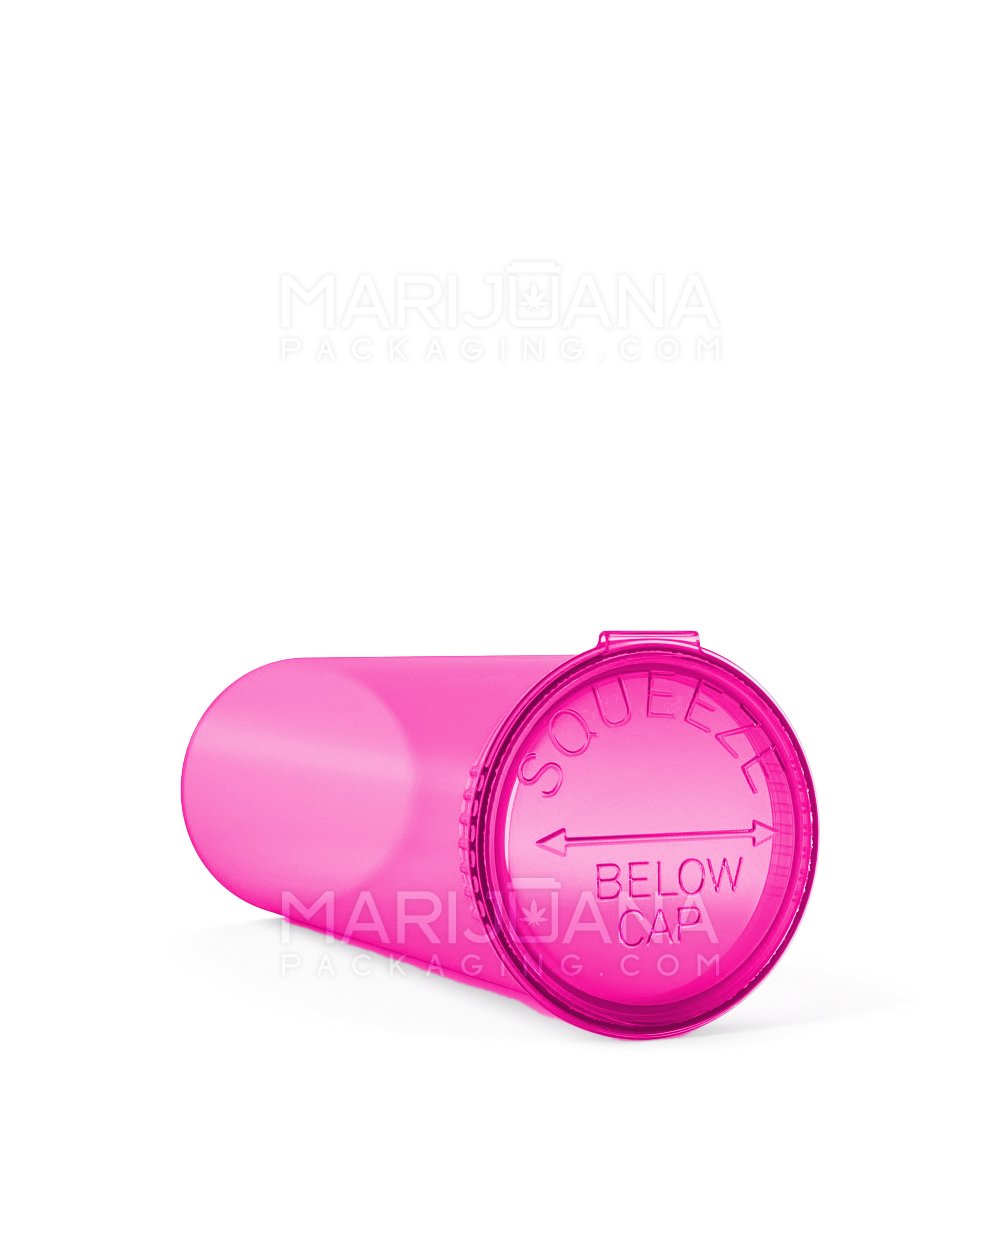 Child Resistant | Transparent Pink Pop Top Bottles | 60dr - 14g - 75 Count - 3